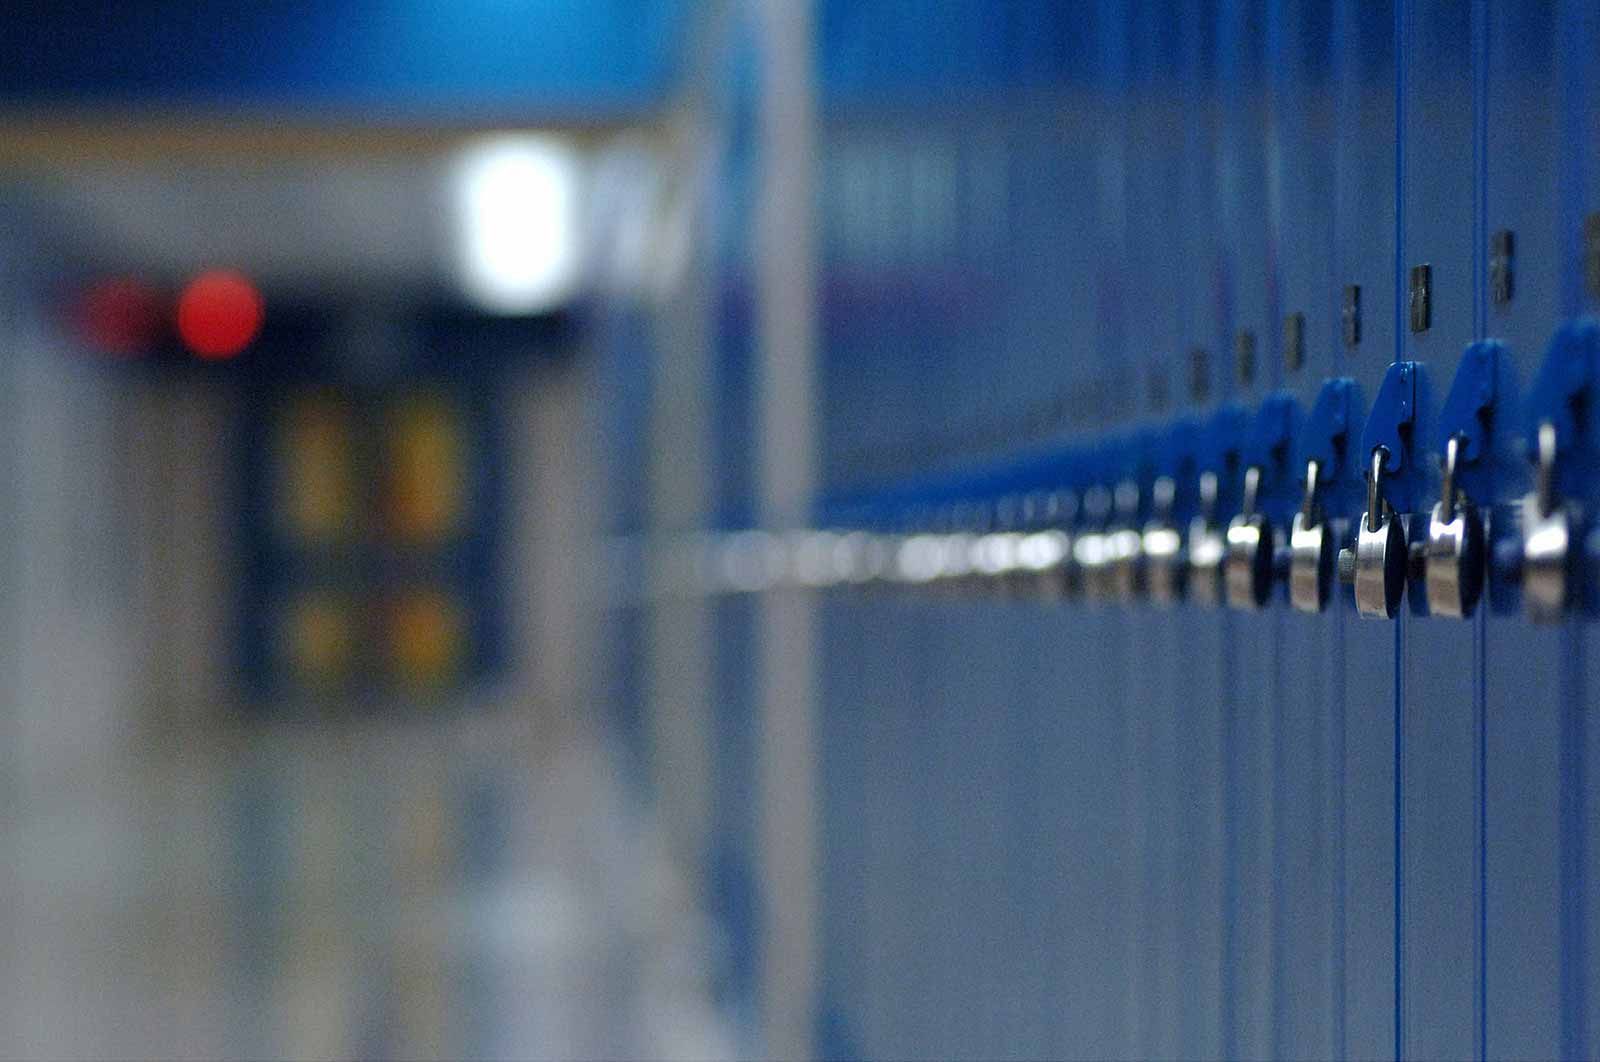 Blue lockers in an empty school hallway.